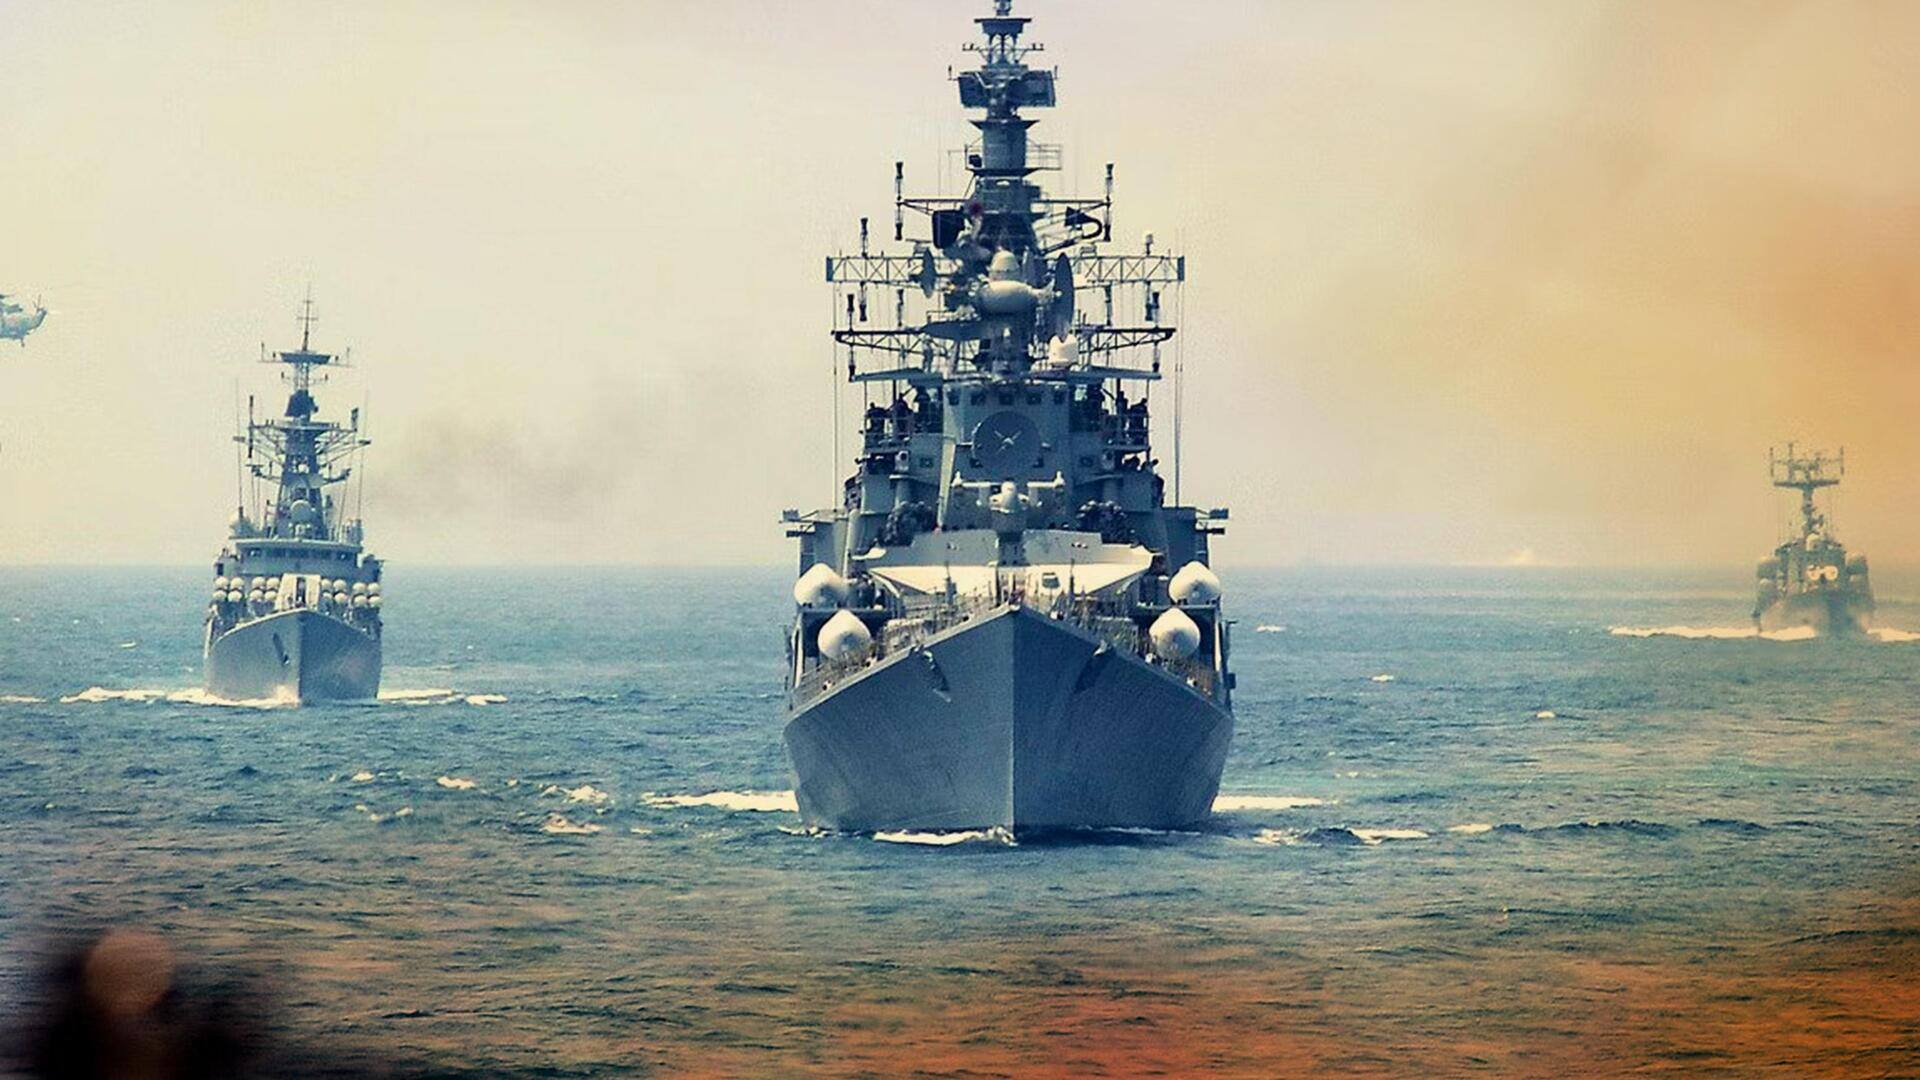 चीन ने हिन्द महासागर में जहाज के जरिए किया सर्वे, पनडुब्बी तैनात करने की योजना